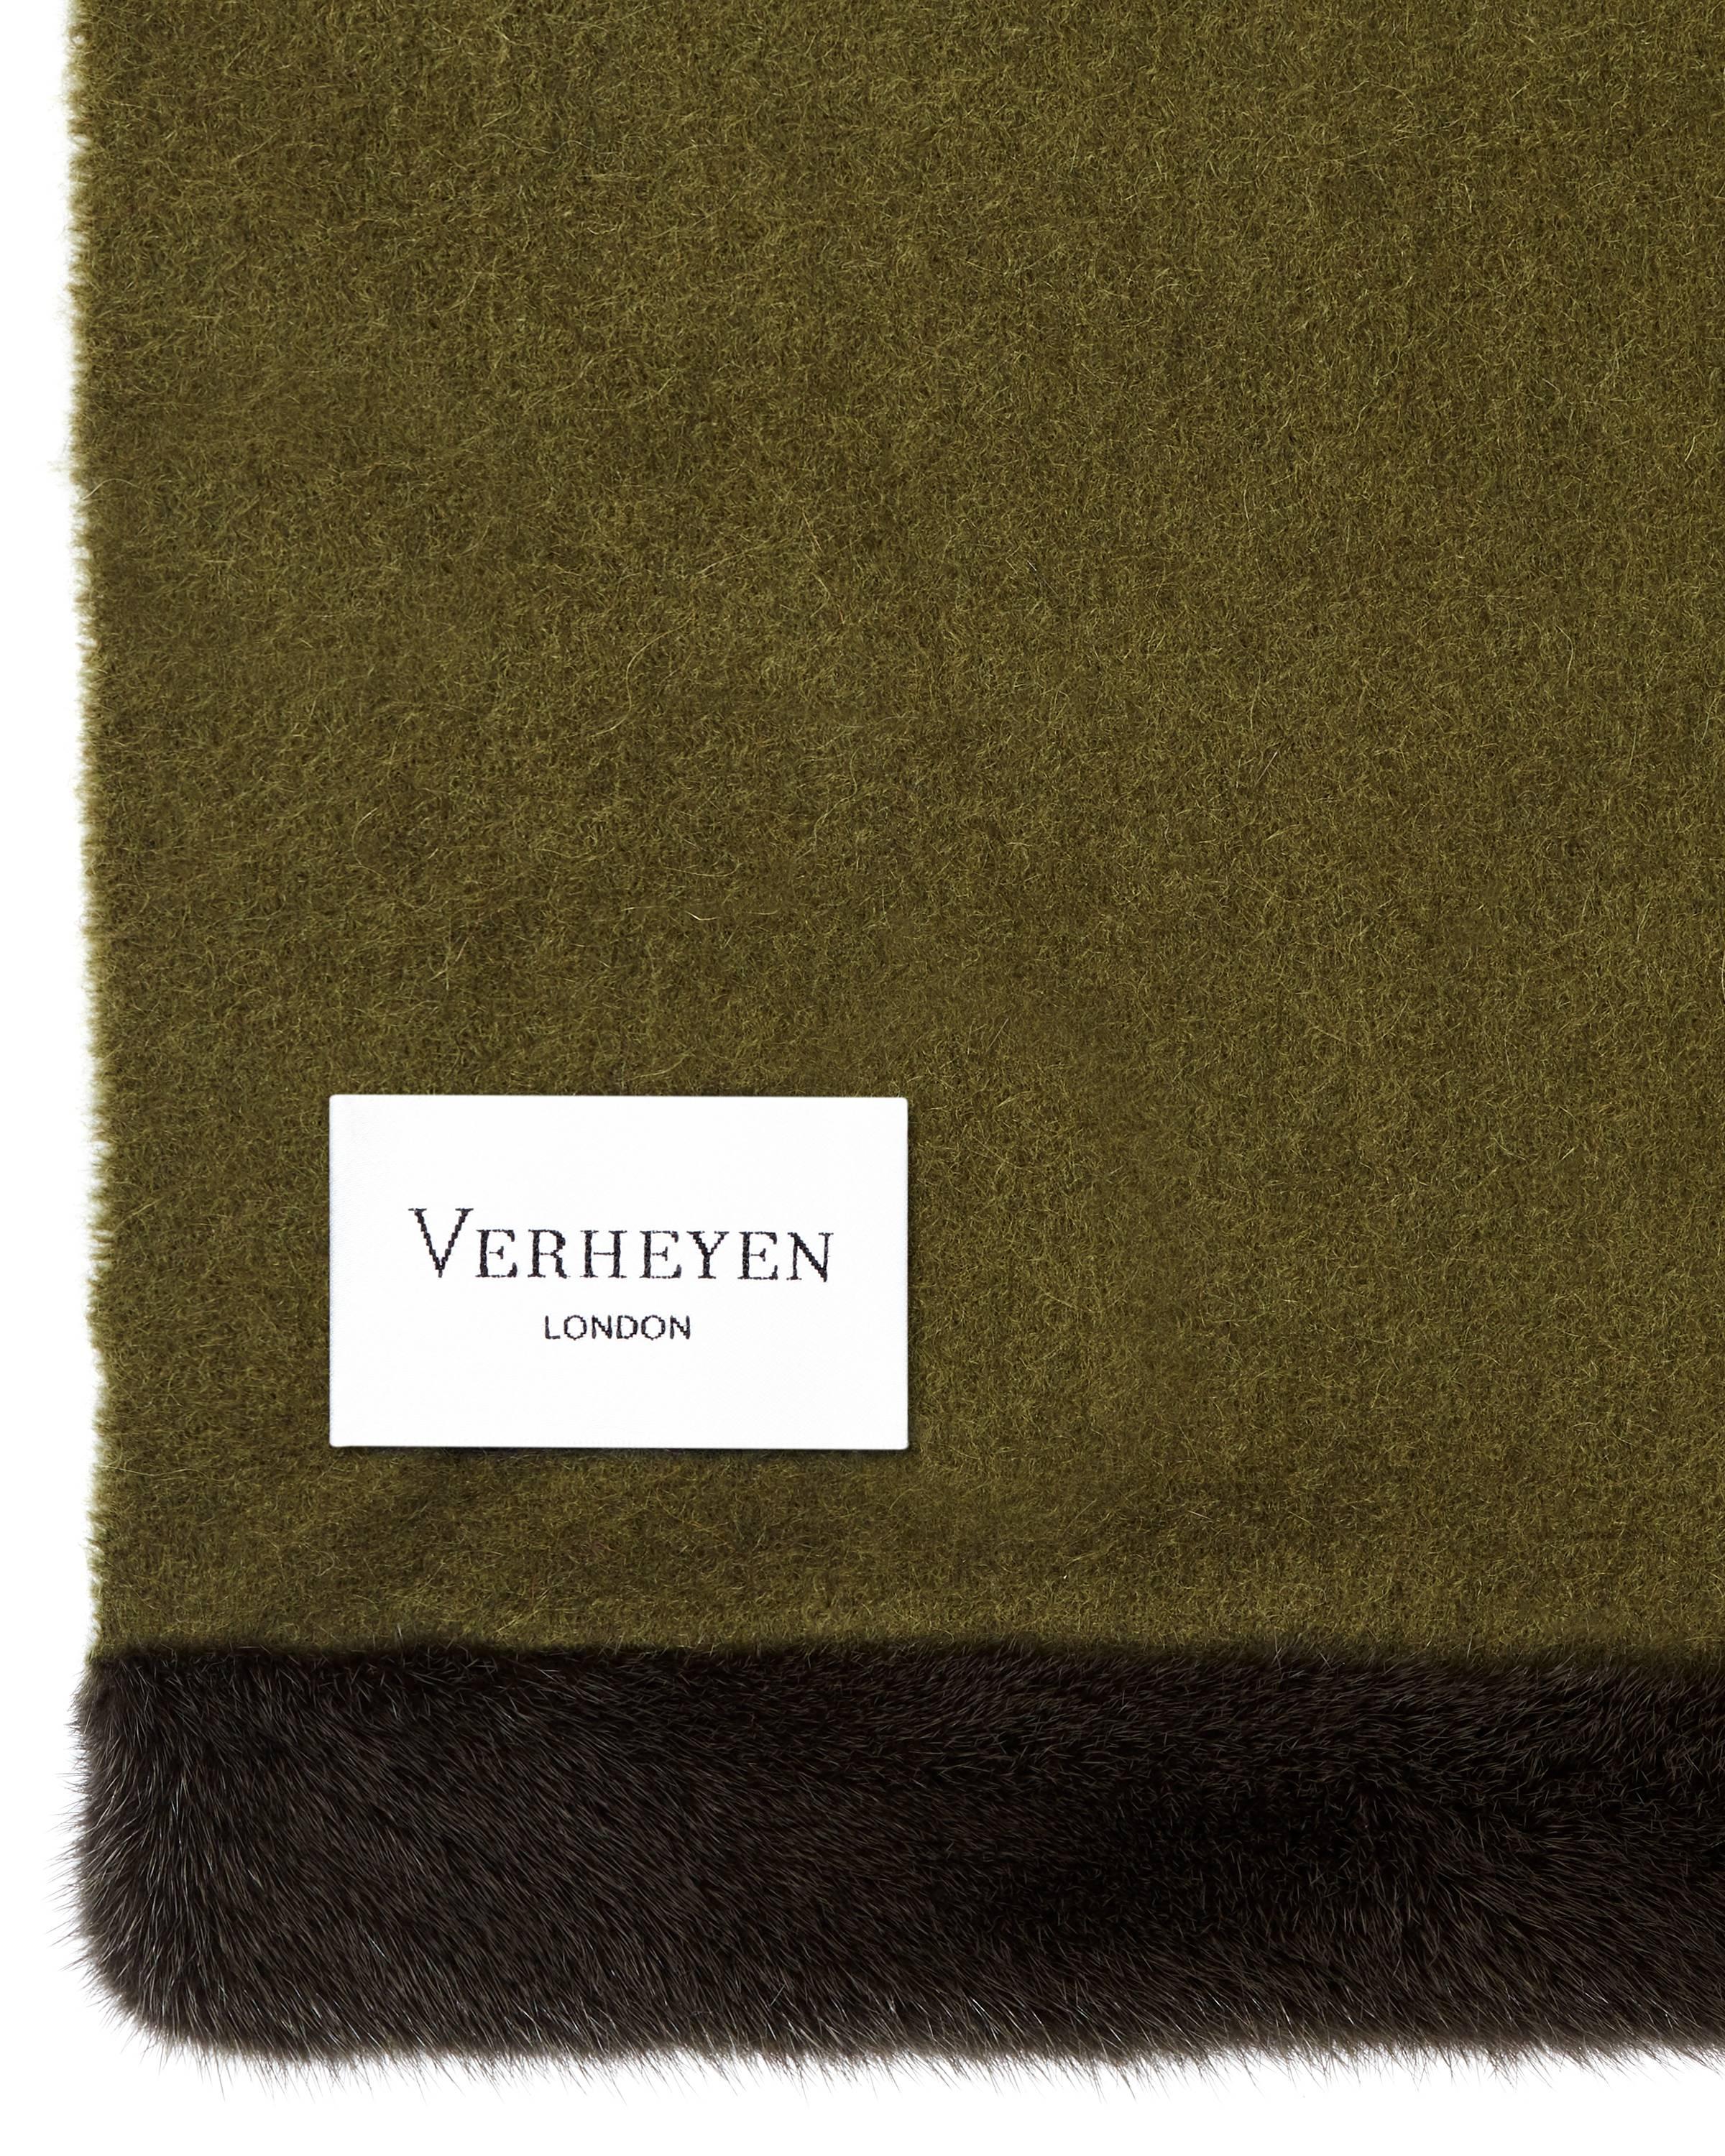 Dieser Schal von Verheyen London ist aus feinstem schottischem gewebtem Kaschmir gesponnen und mit feinstem gefärbtem Nerz veredelt. Seine Wärme umhüllt Sie mit Luxus:: perfekt für Reisen und Komfort:: wo immer Sie sind. 

PRODUKTDETAILS
Verheyen